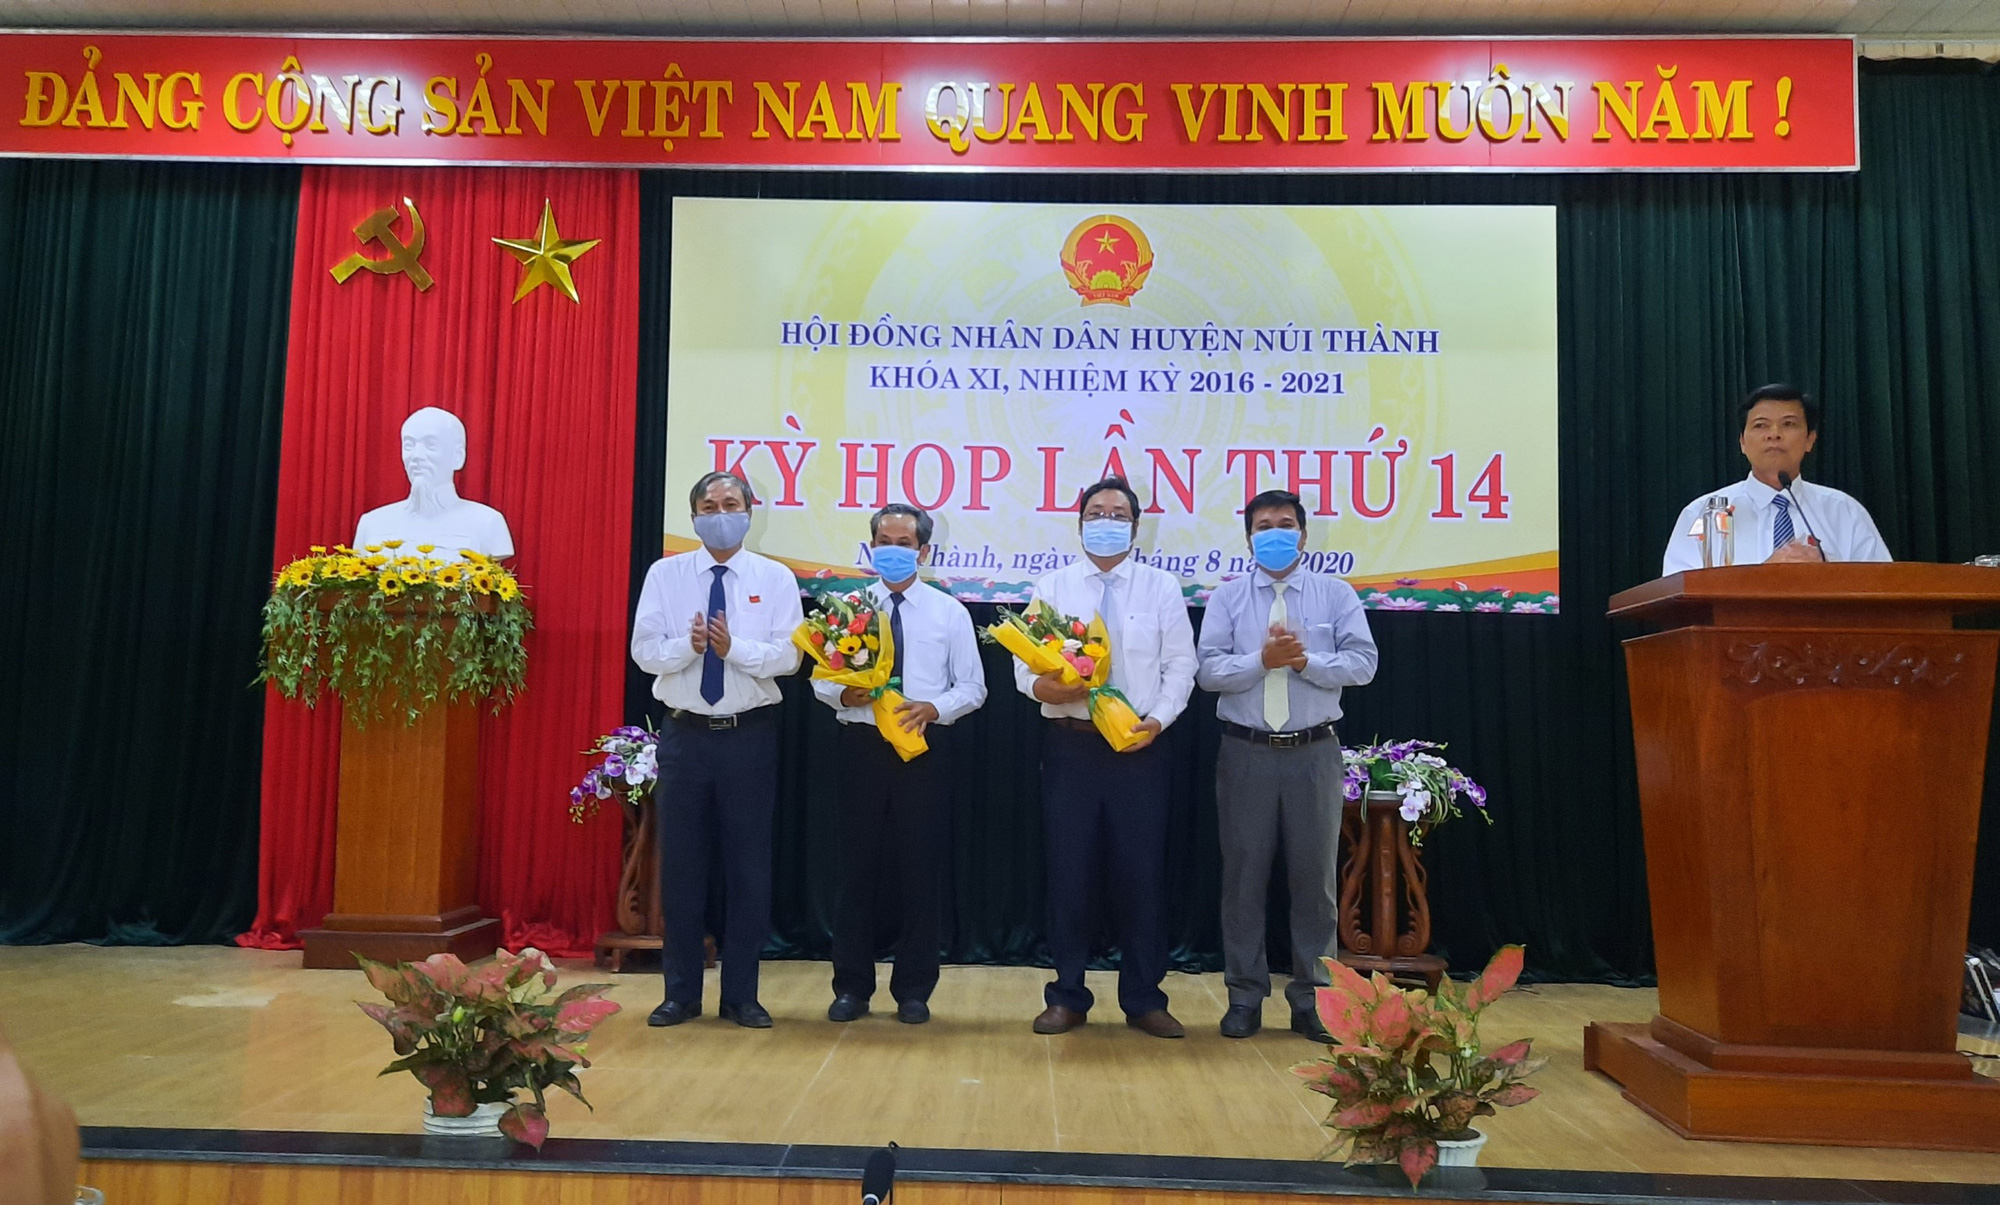 Quảng Nam: Ông Lê Văn Sinh được bầu làm Chủ tịch UBND huyện Núi Thành - Ảnh 1.